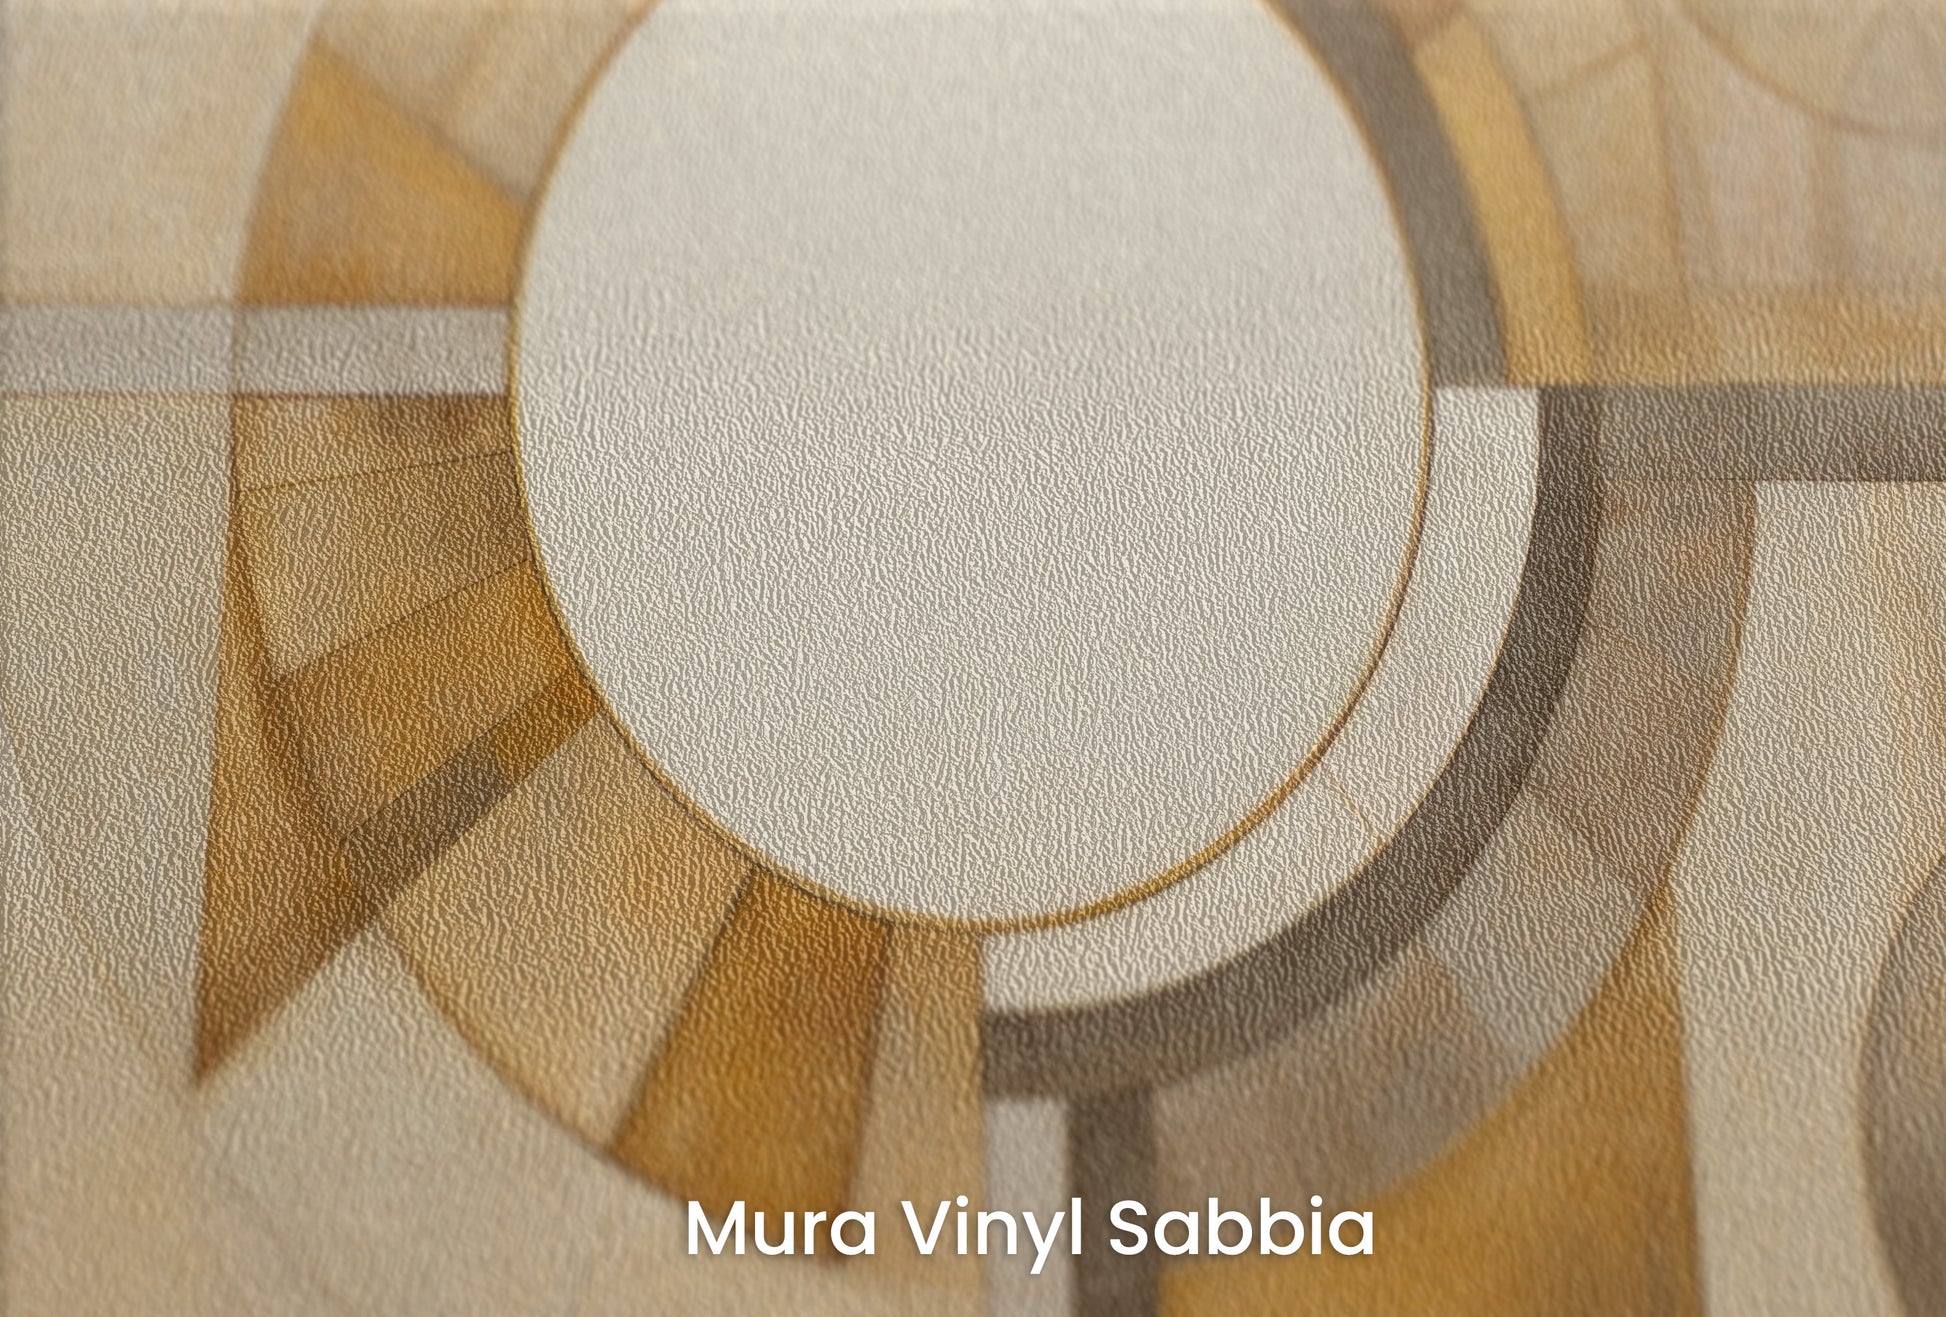 Zbliżenie na artystyczną fototapetę o nazwie ASTRAL CIRCULARITY na podłożu Mura Vinyl Sabbia struktura grubego ziarna piasku.